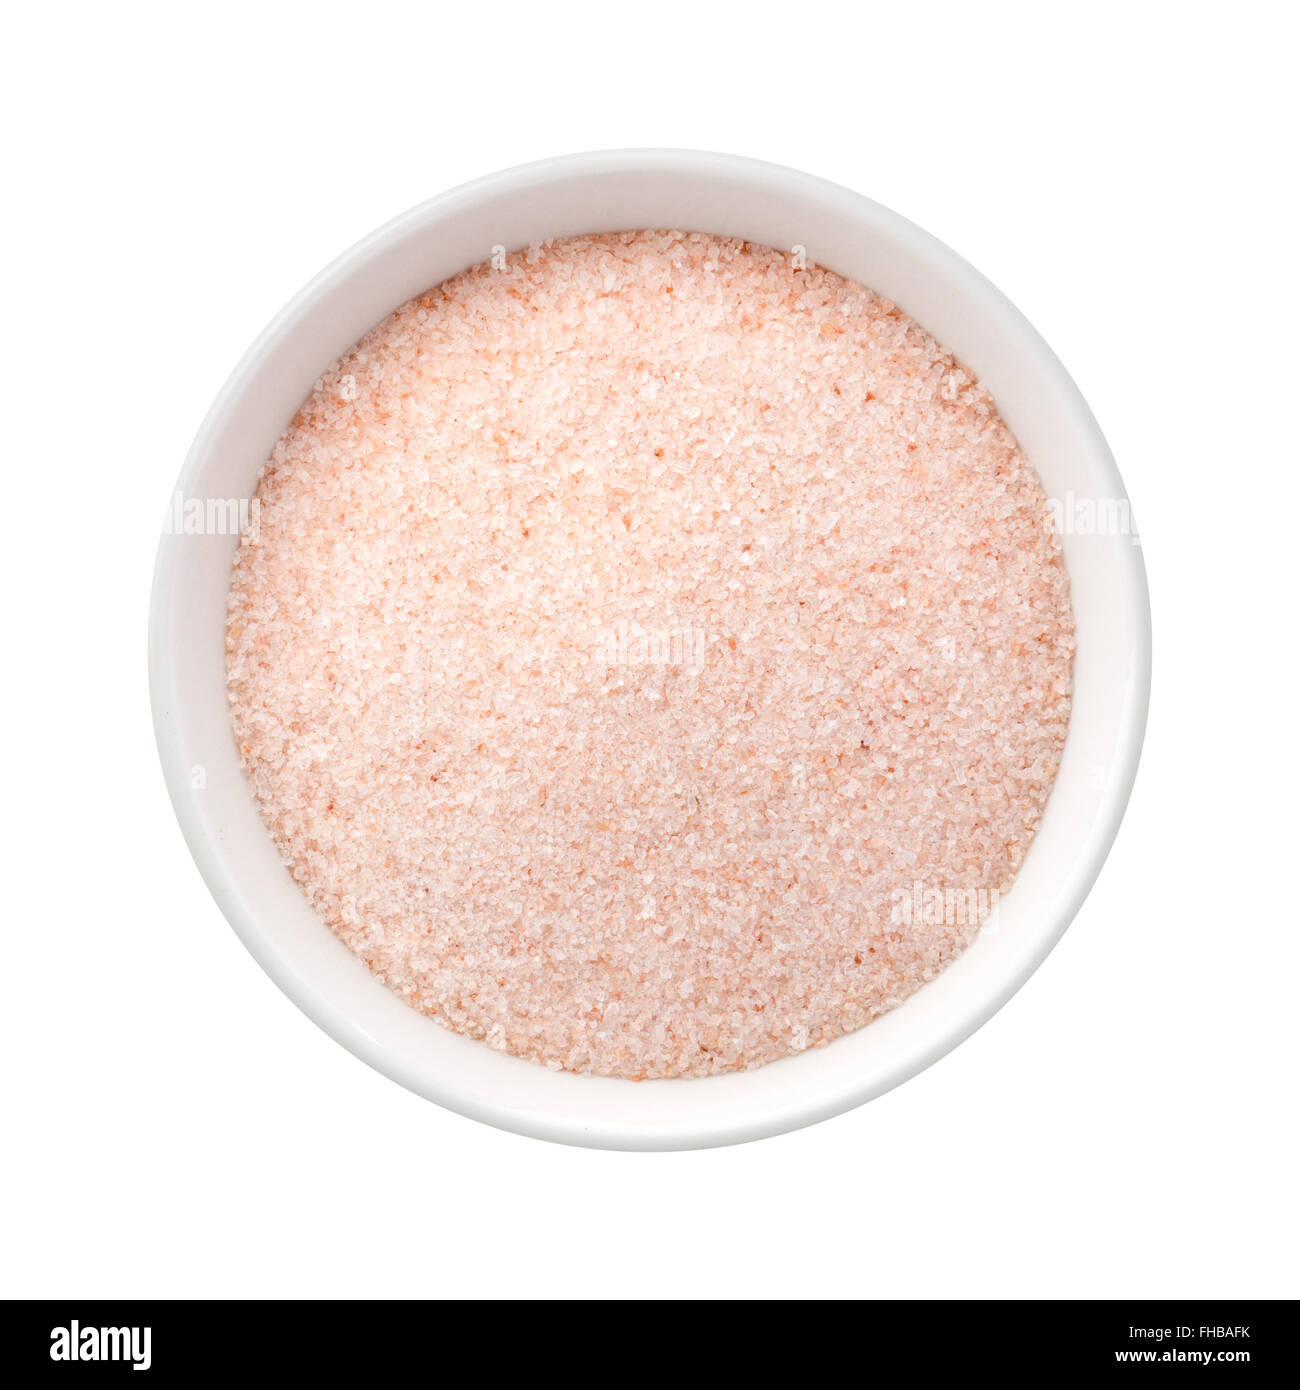 Fine sel rose de l'Himalaya dans un bol en céramique. L'image est un coupé, isolé sur un fond blanc. Banque D'Images